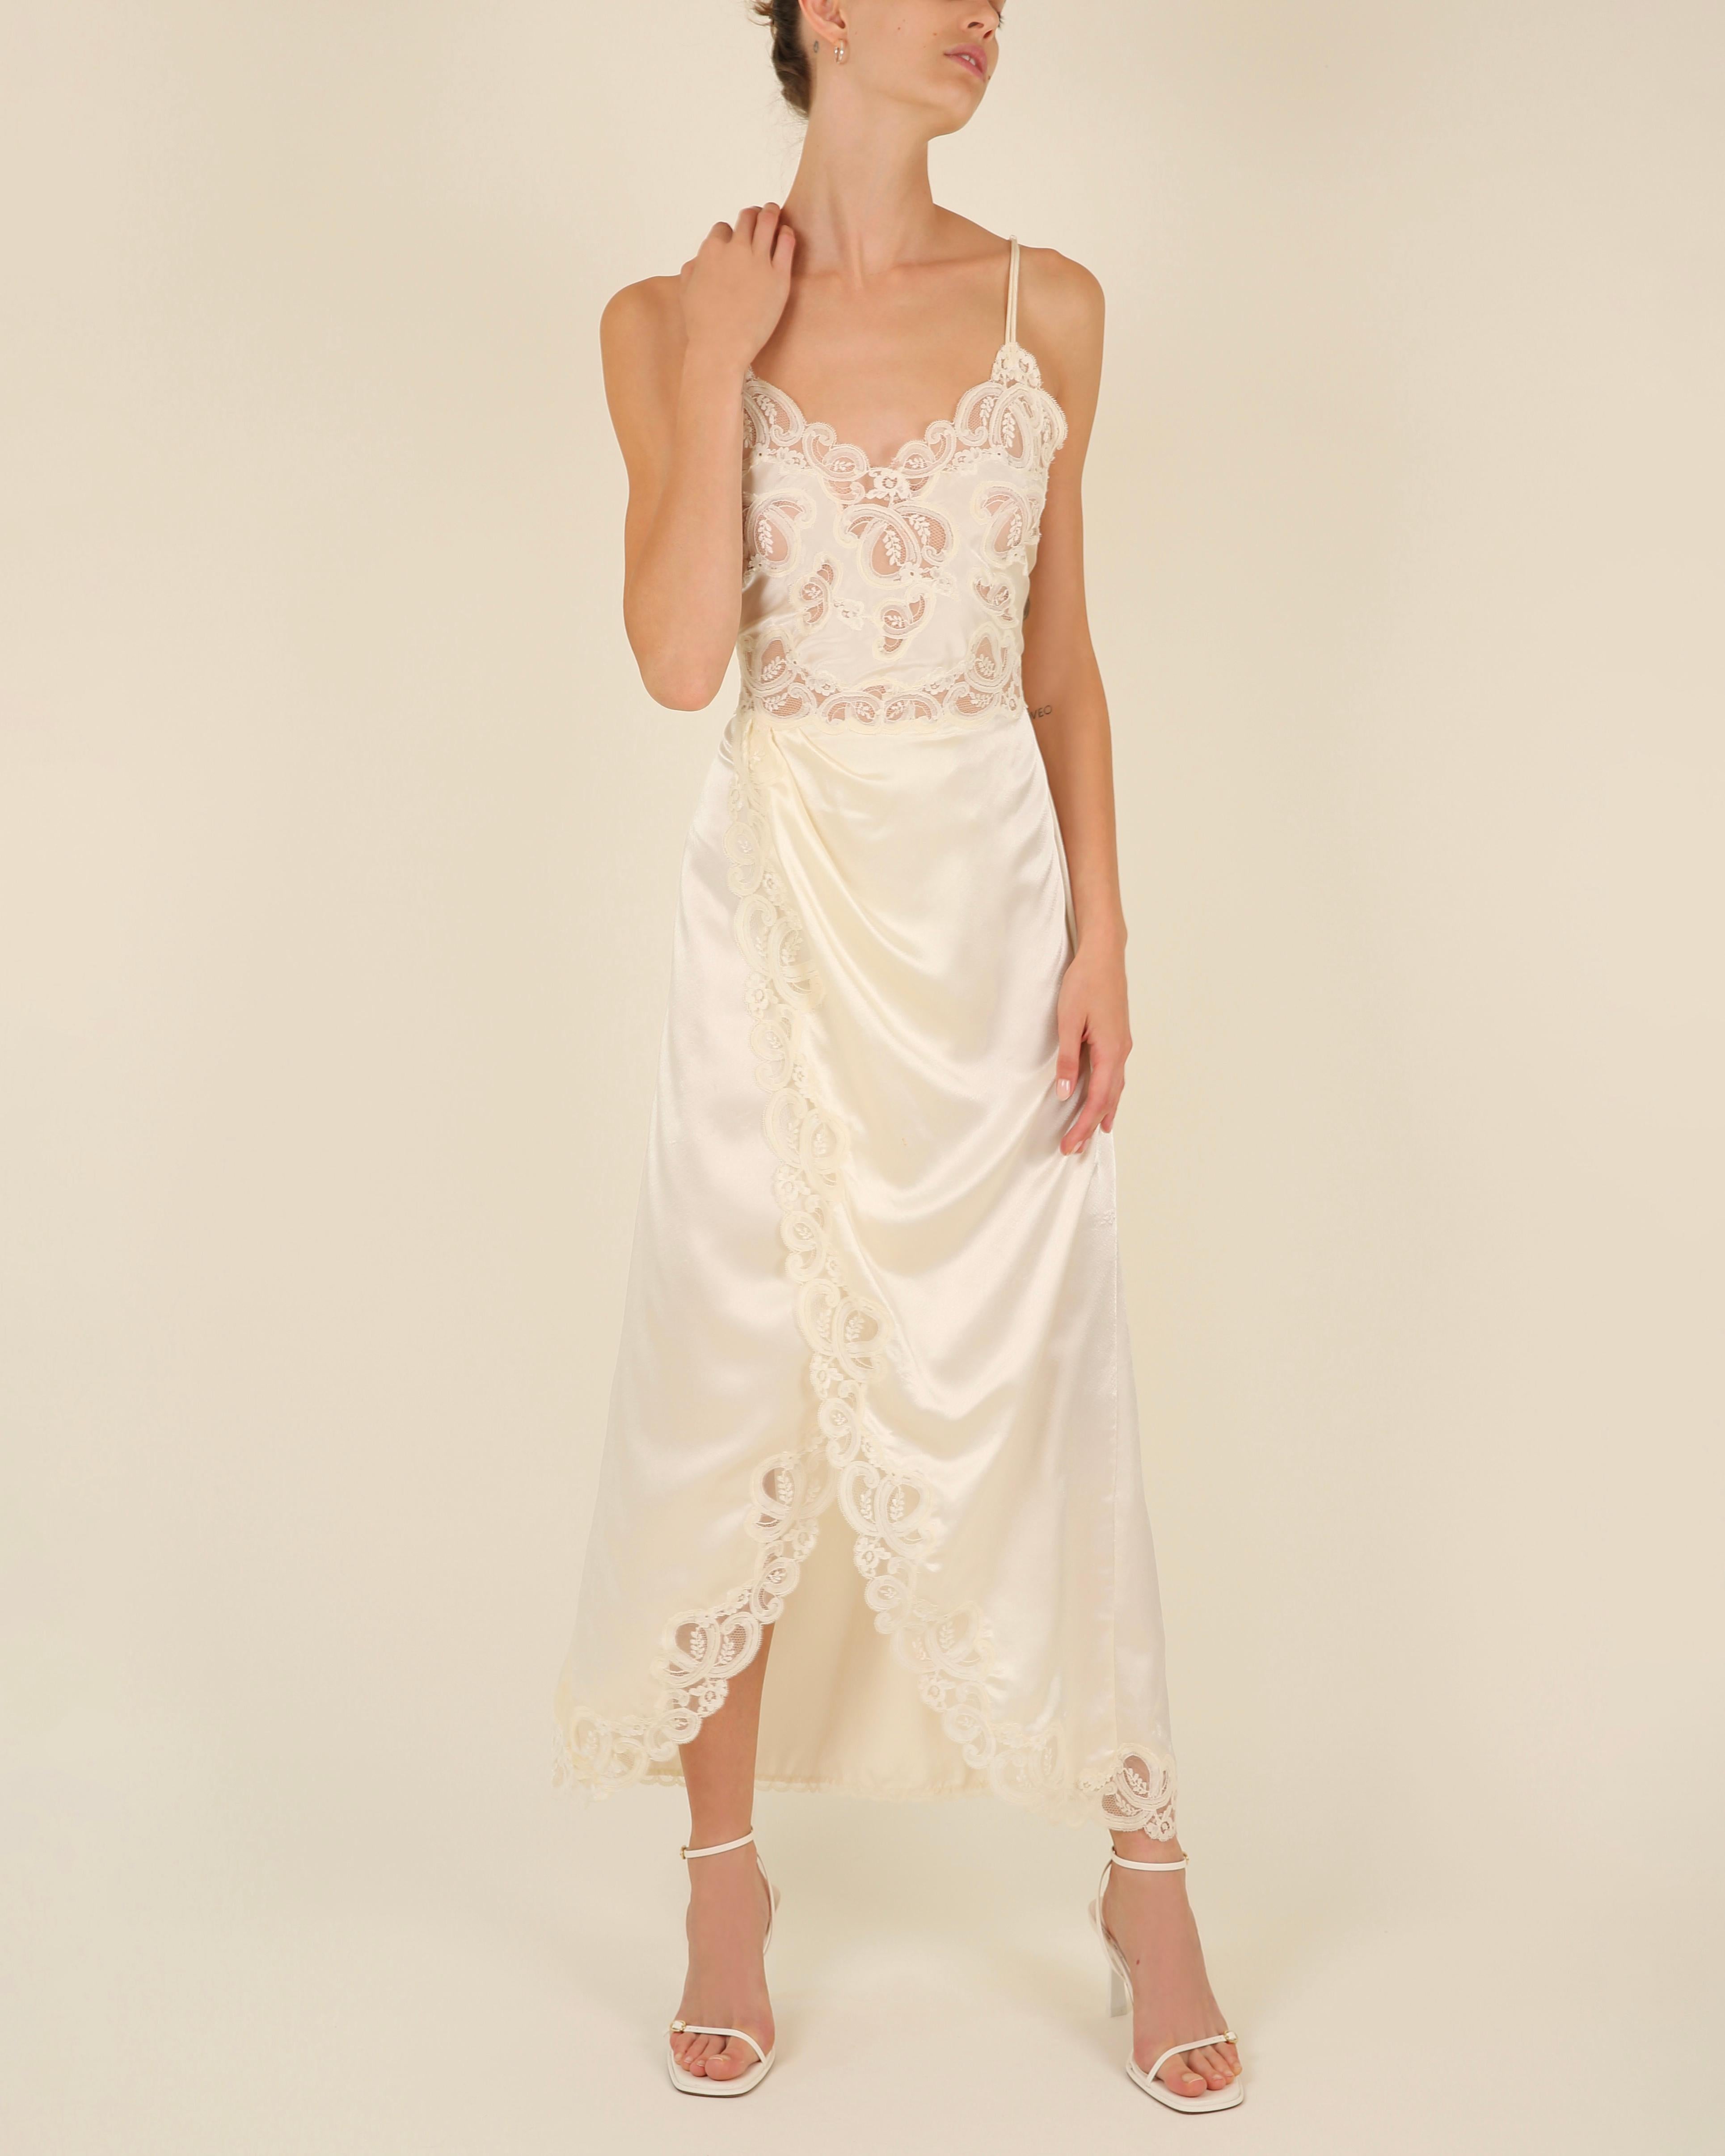 Women's Eve Stillman vintage silk ivory cream lace slit night gown slip wedding dress